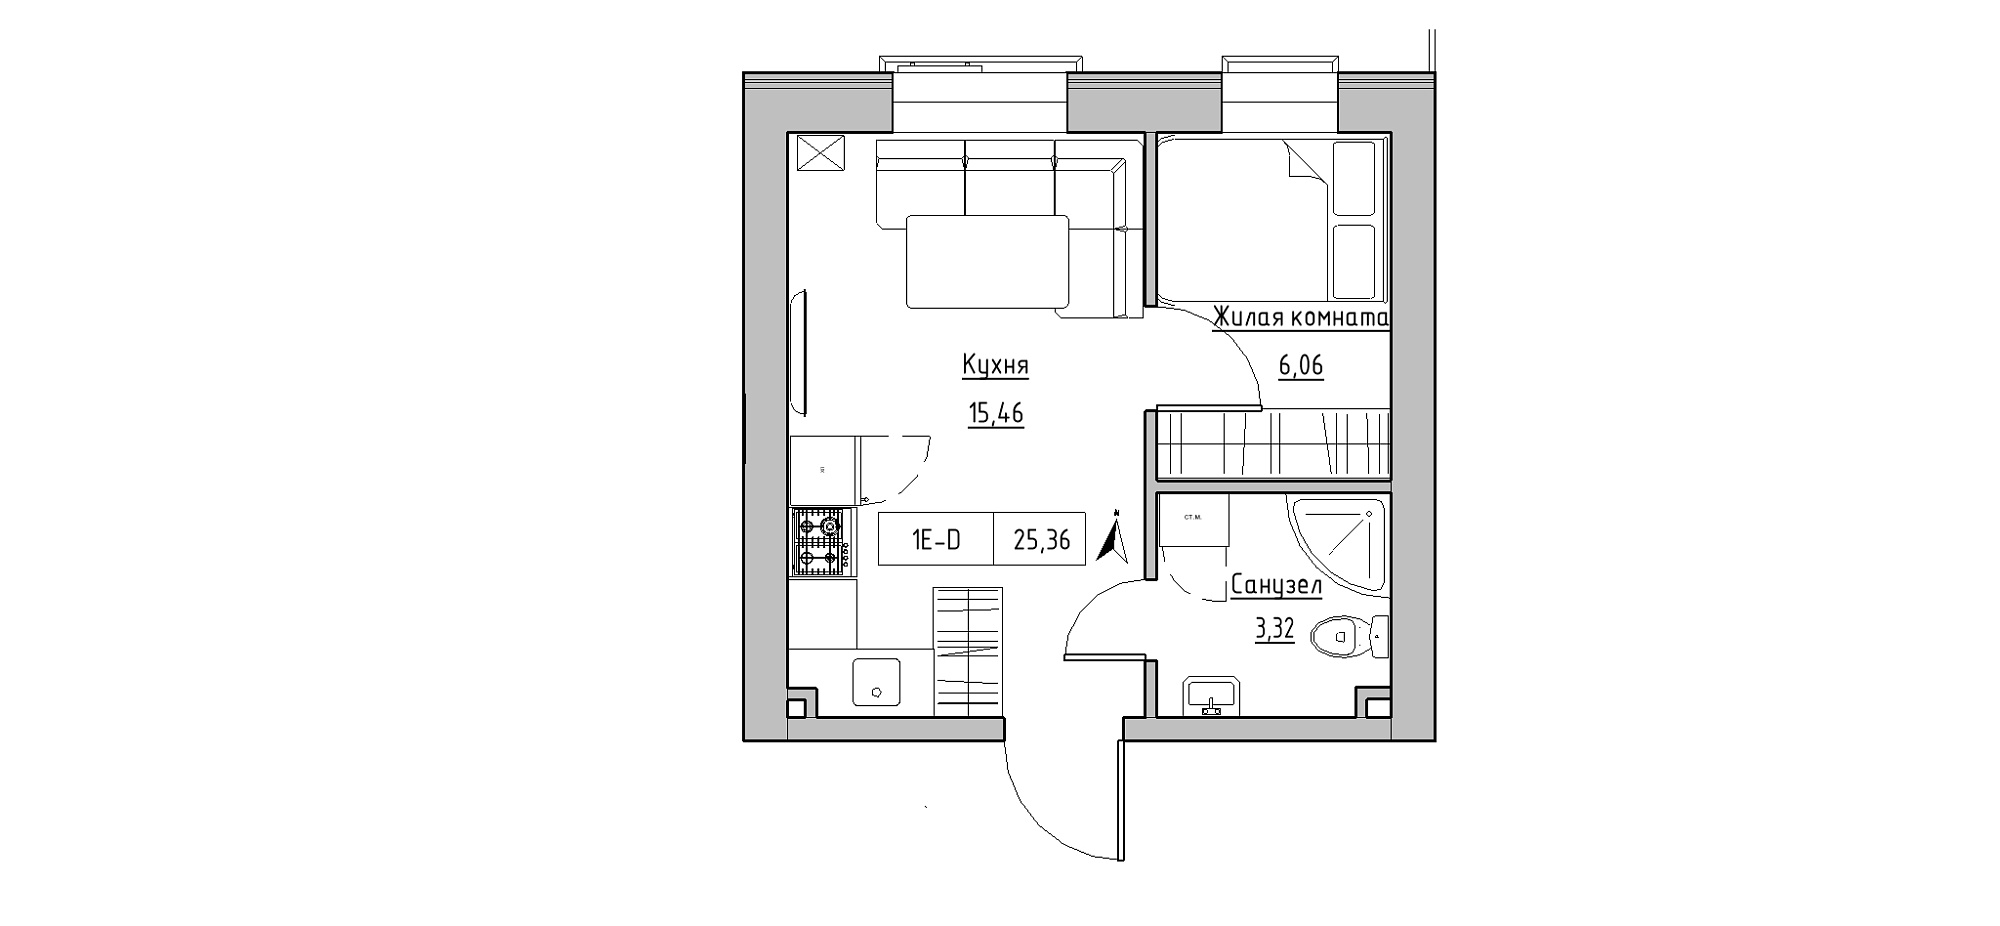 Планировка 1-к квартира площей 25.36м2, KS-020-03/0002.